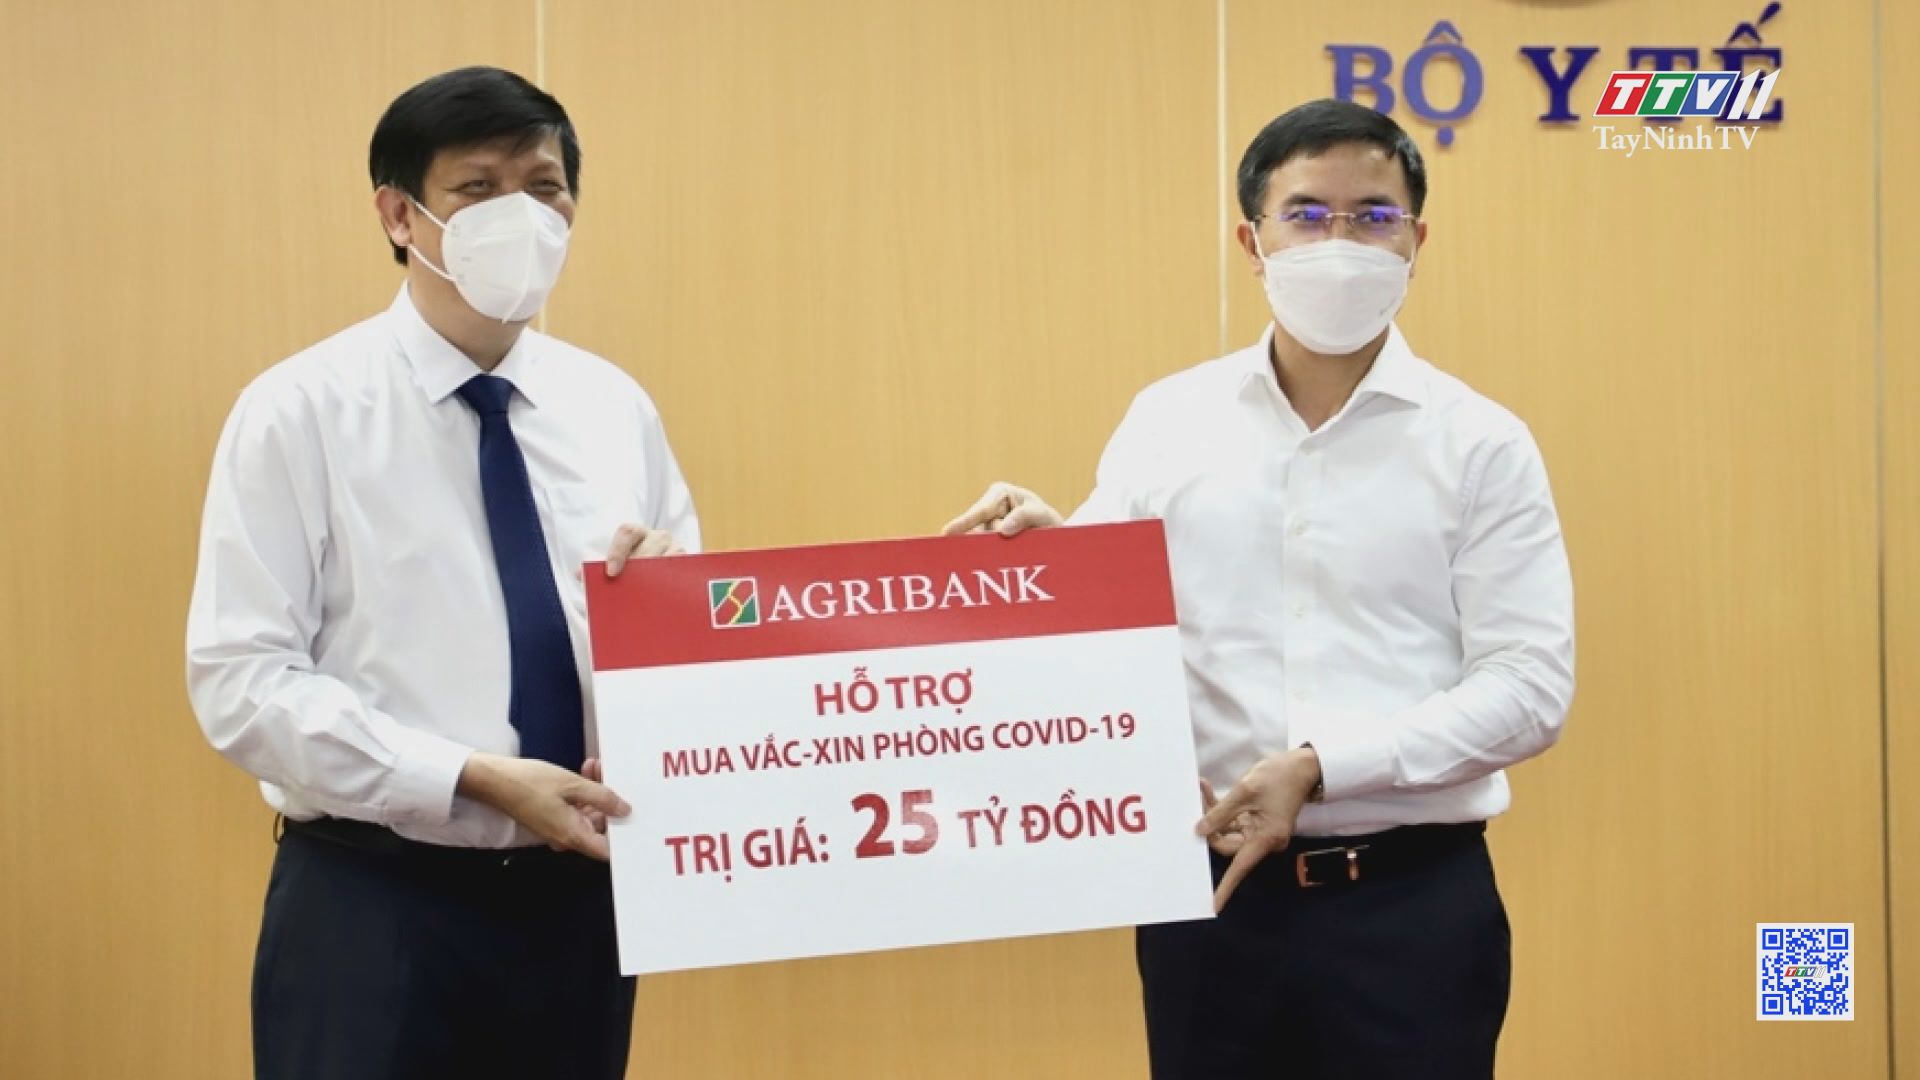 Agribank chia sẻ khó khăn với khách hàng trong tình hình dịch bệnh | NGÂN HÀNG VỚI TAM NÔNG | TayNinhTV